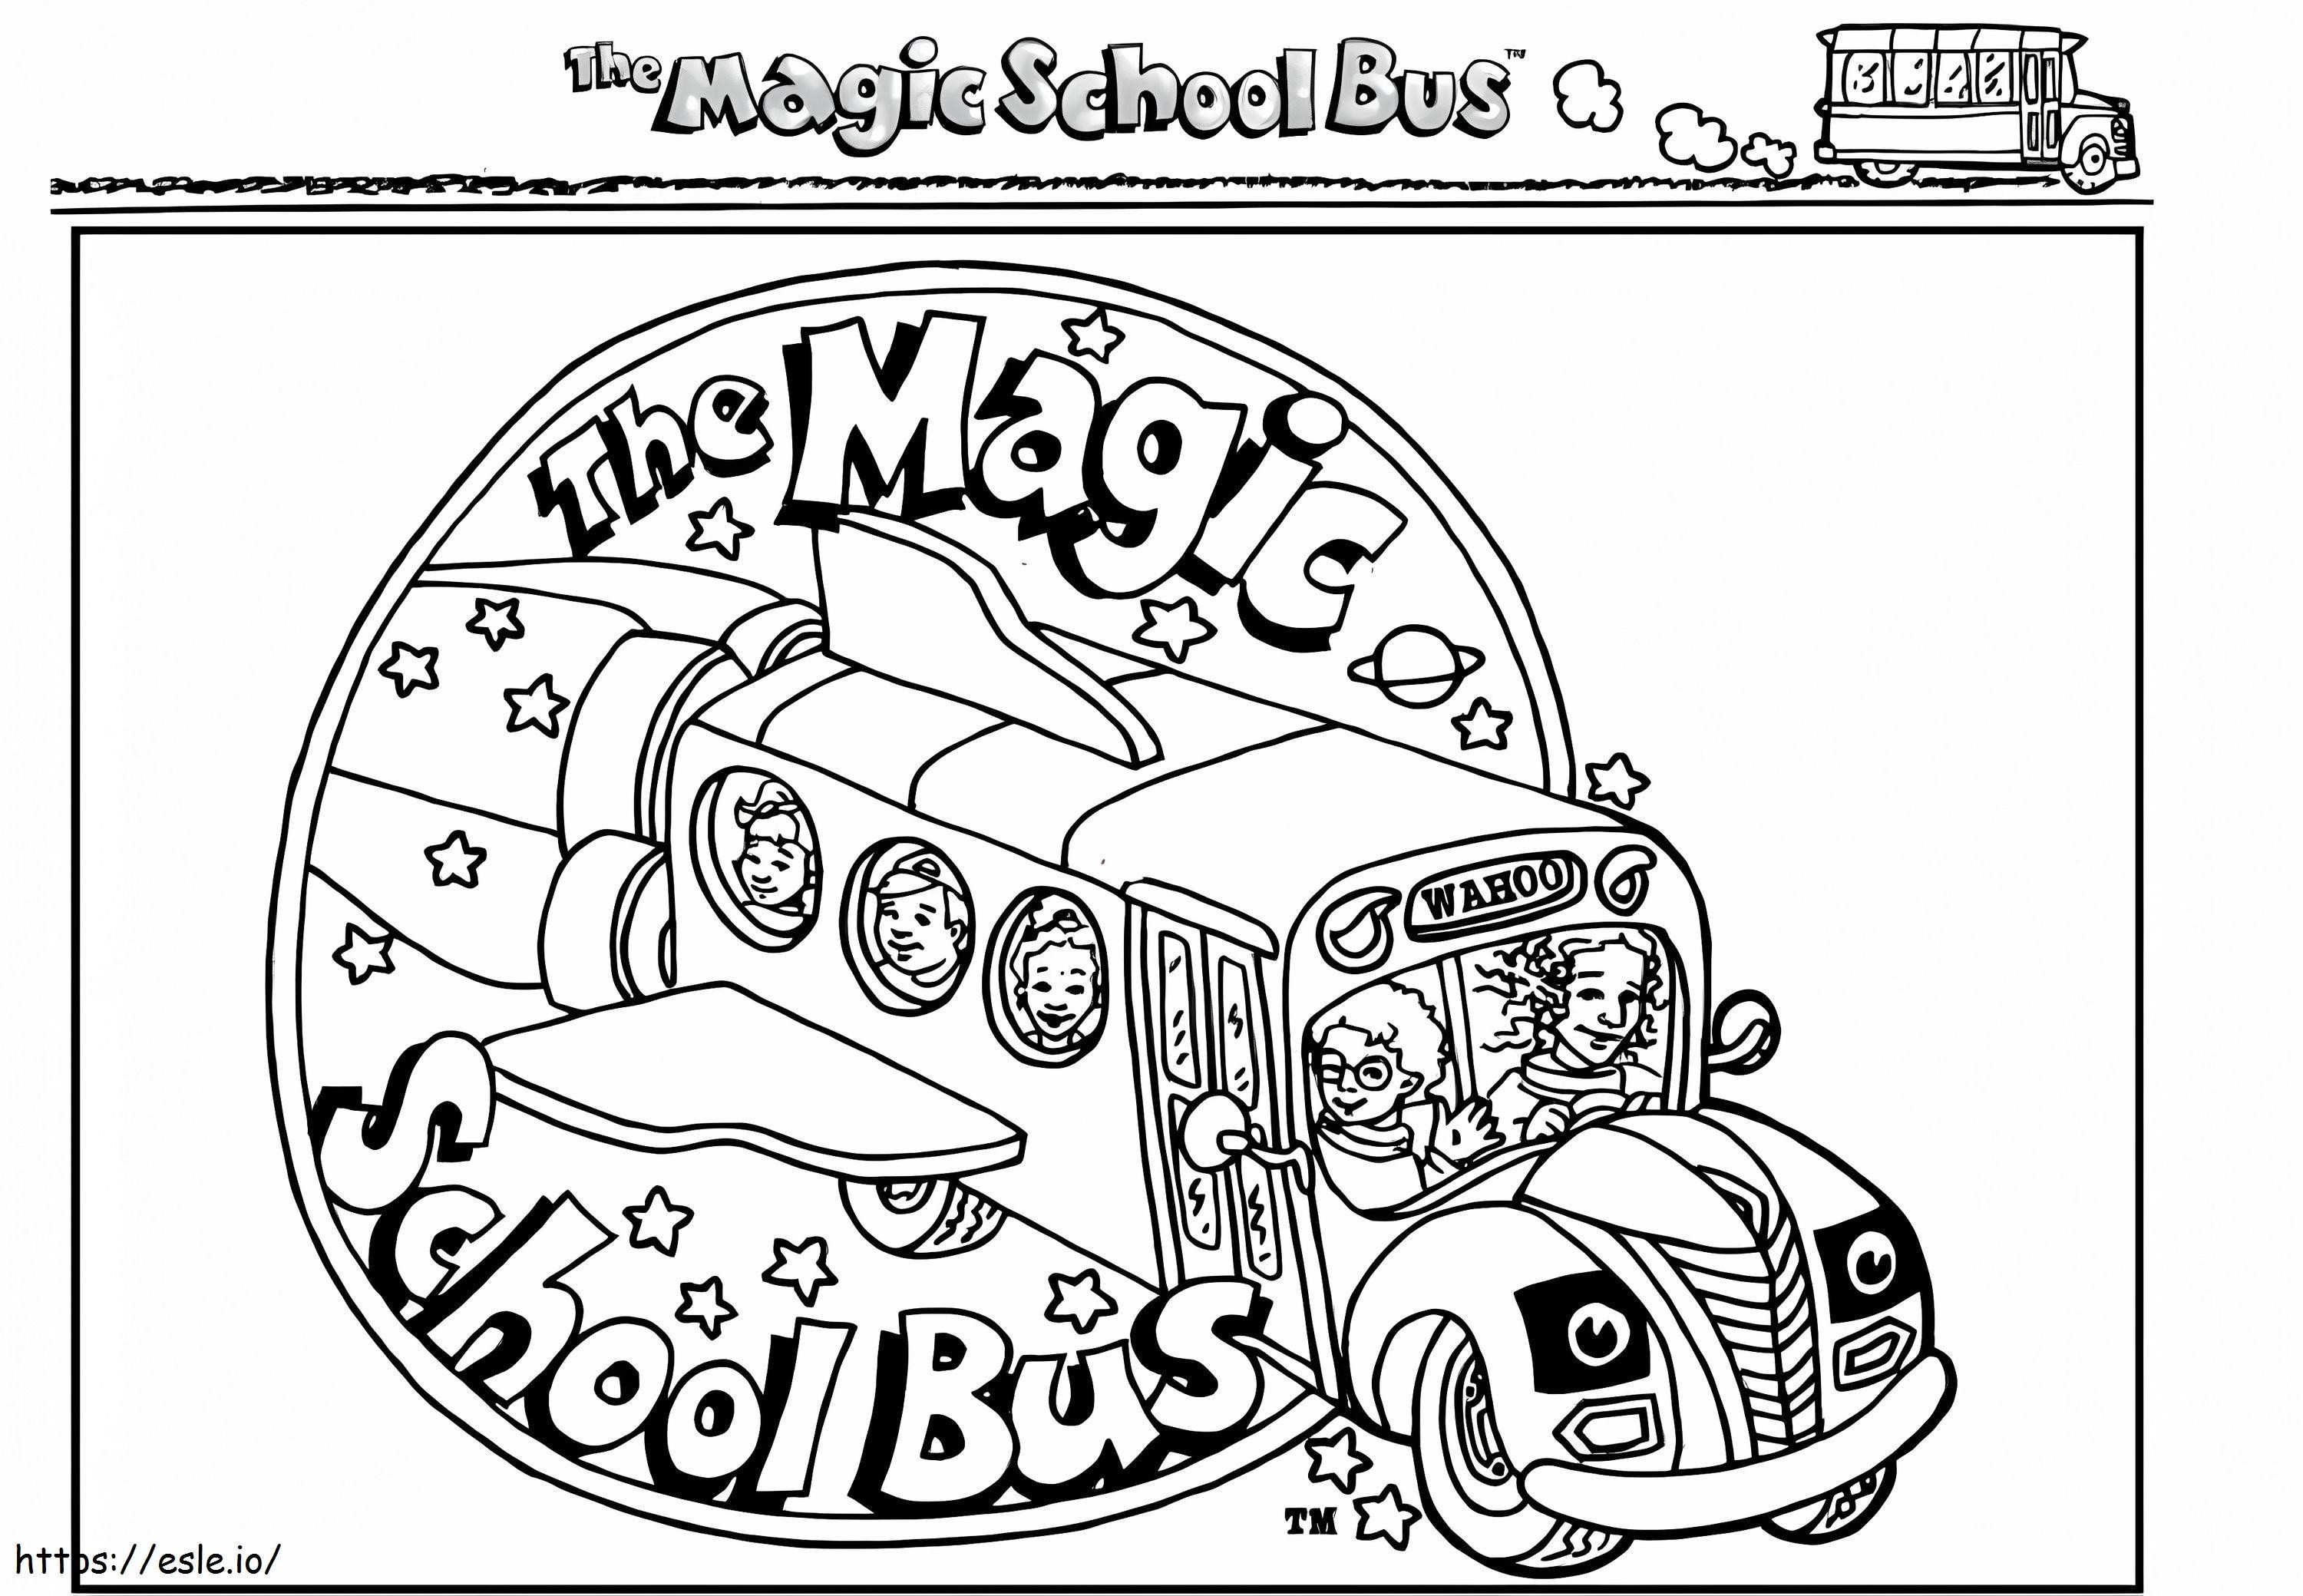 Scuolabus magico 6 da colorare